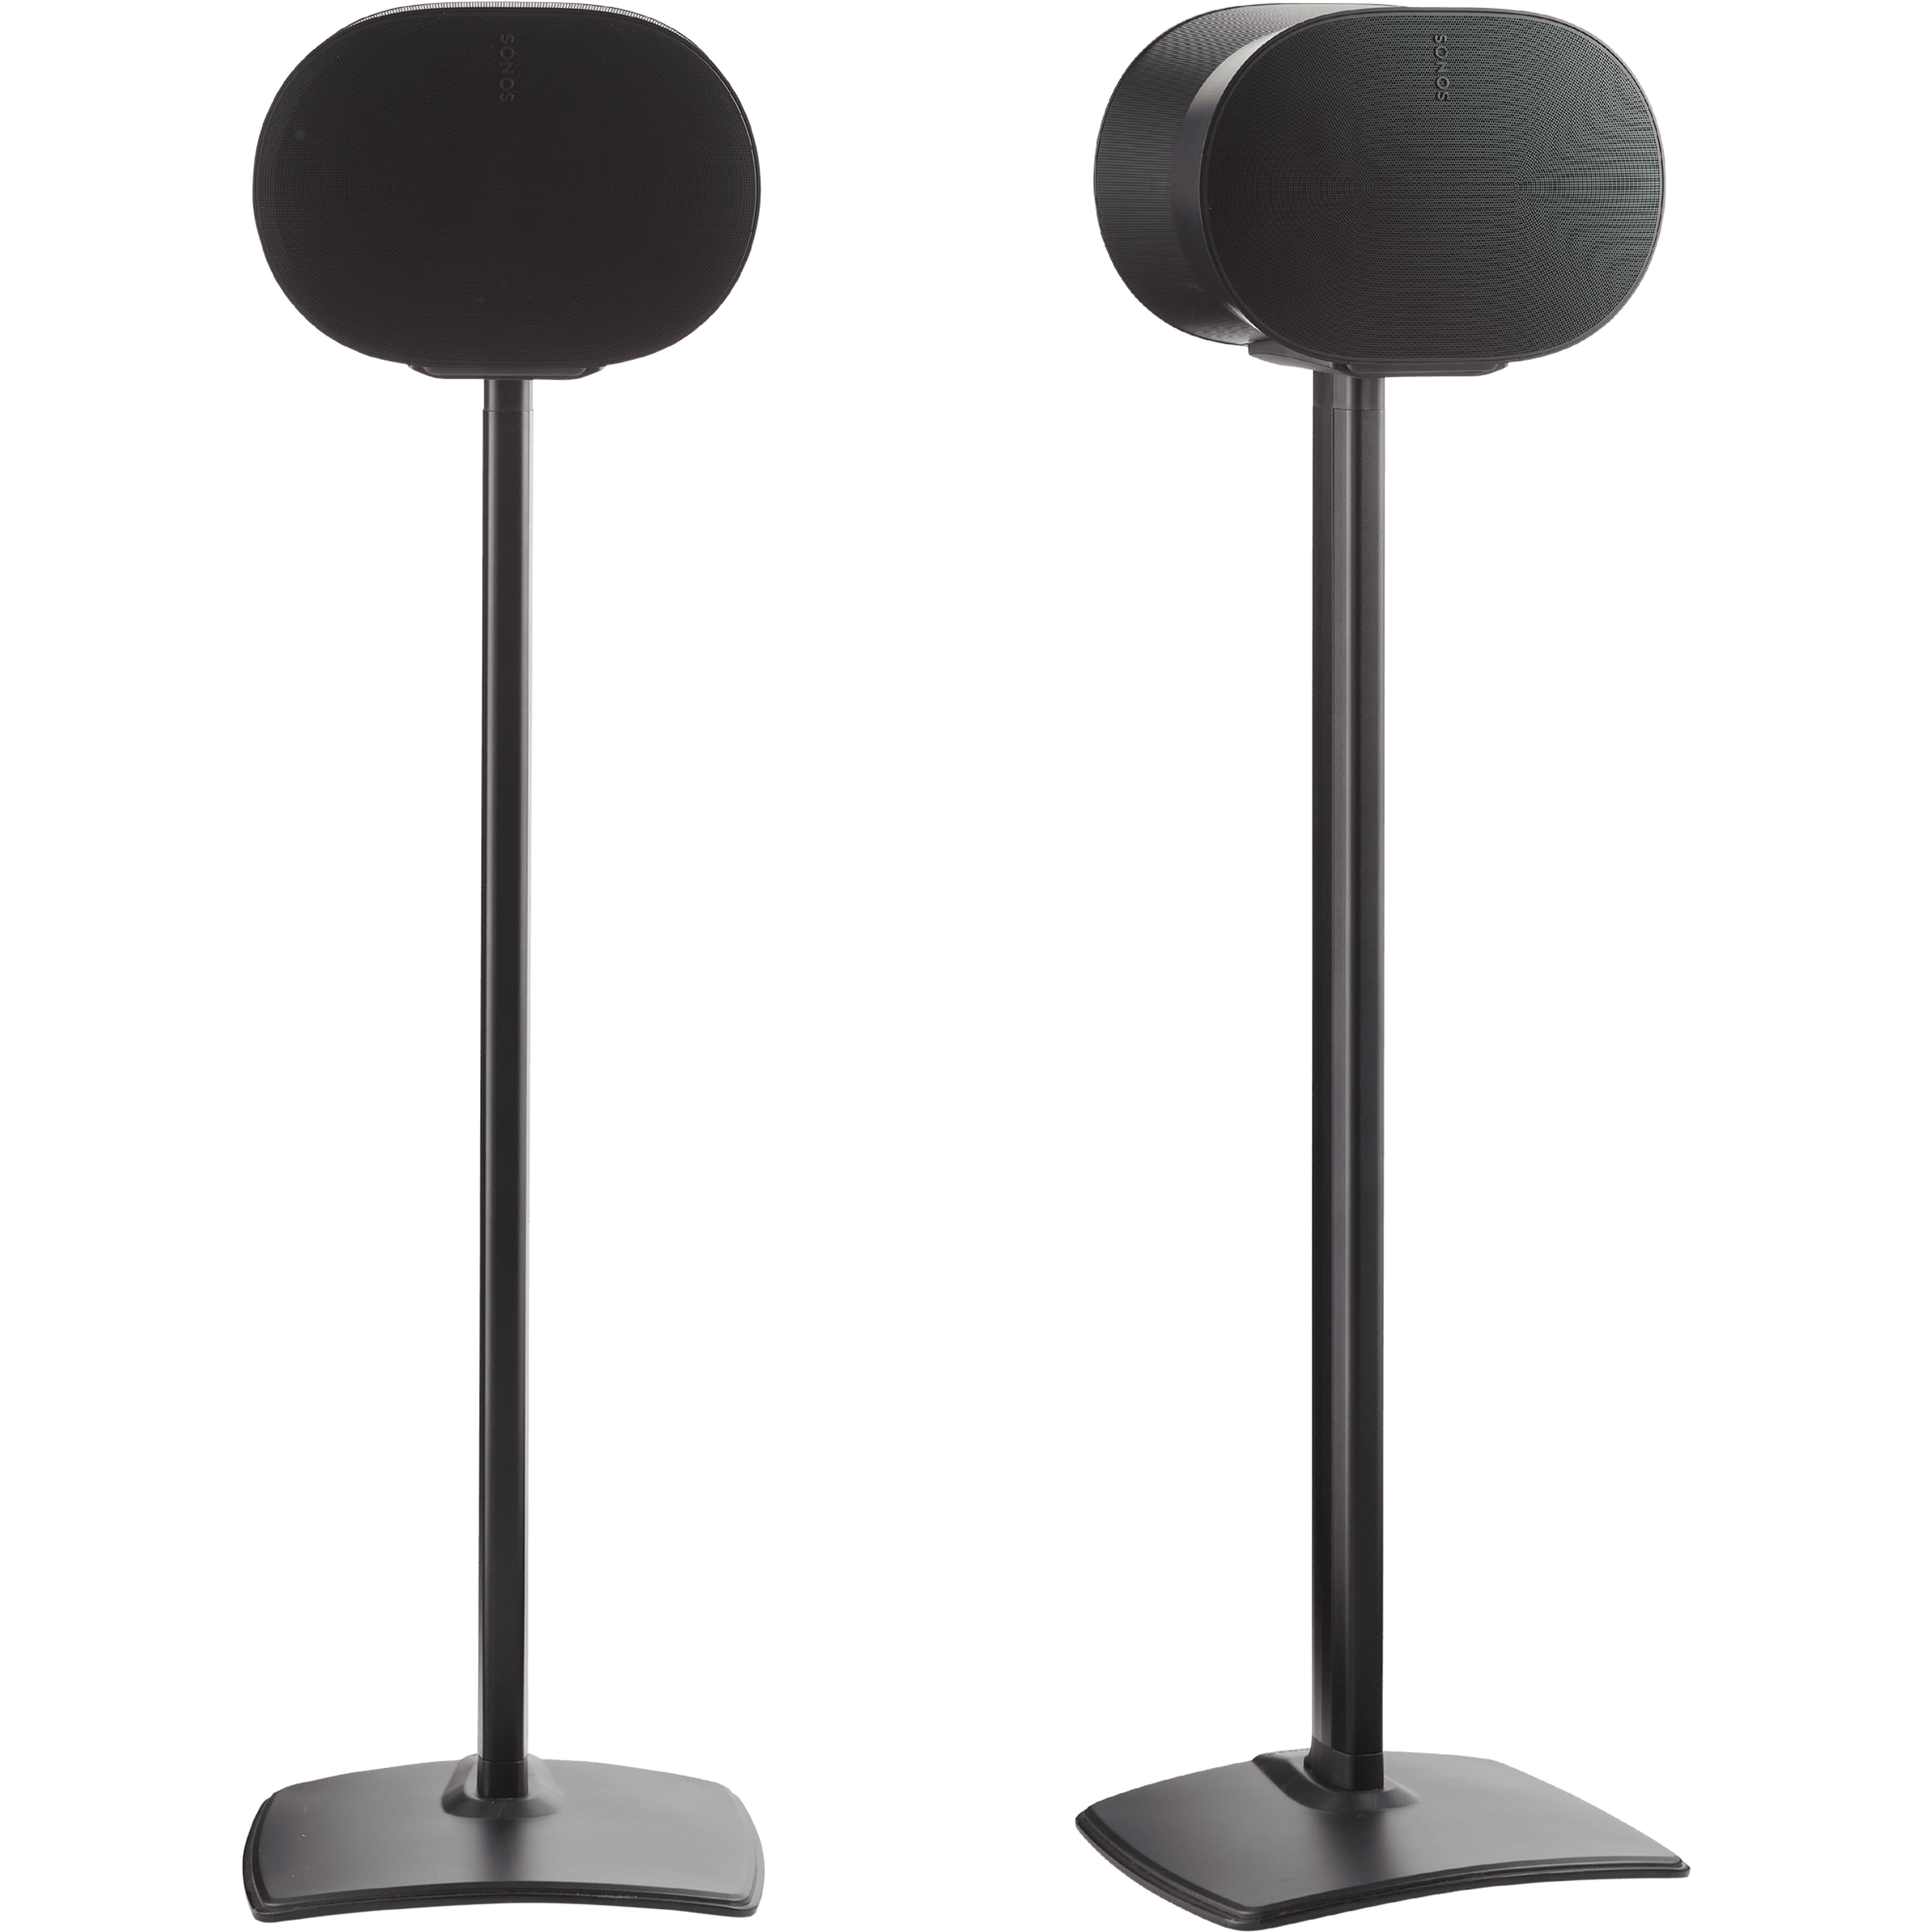 Bild på två svarta Sonos Era 300-högtalare på två svarta stativ från Sanus